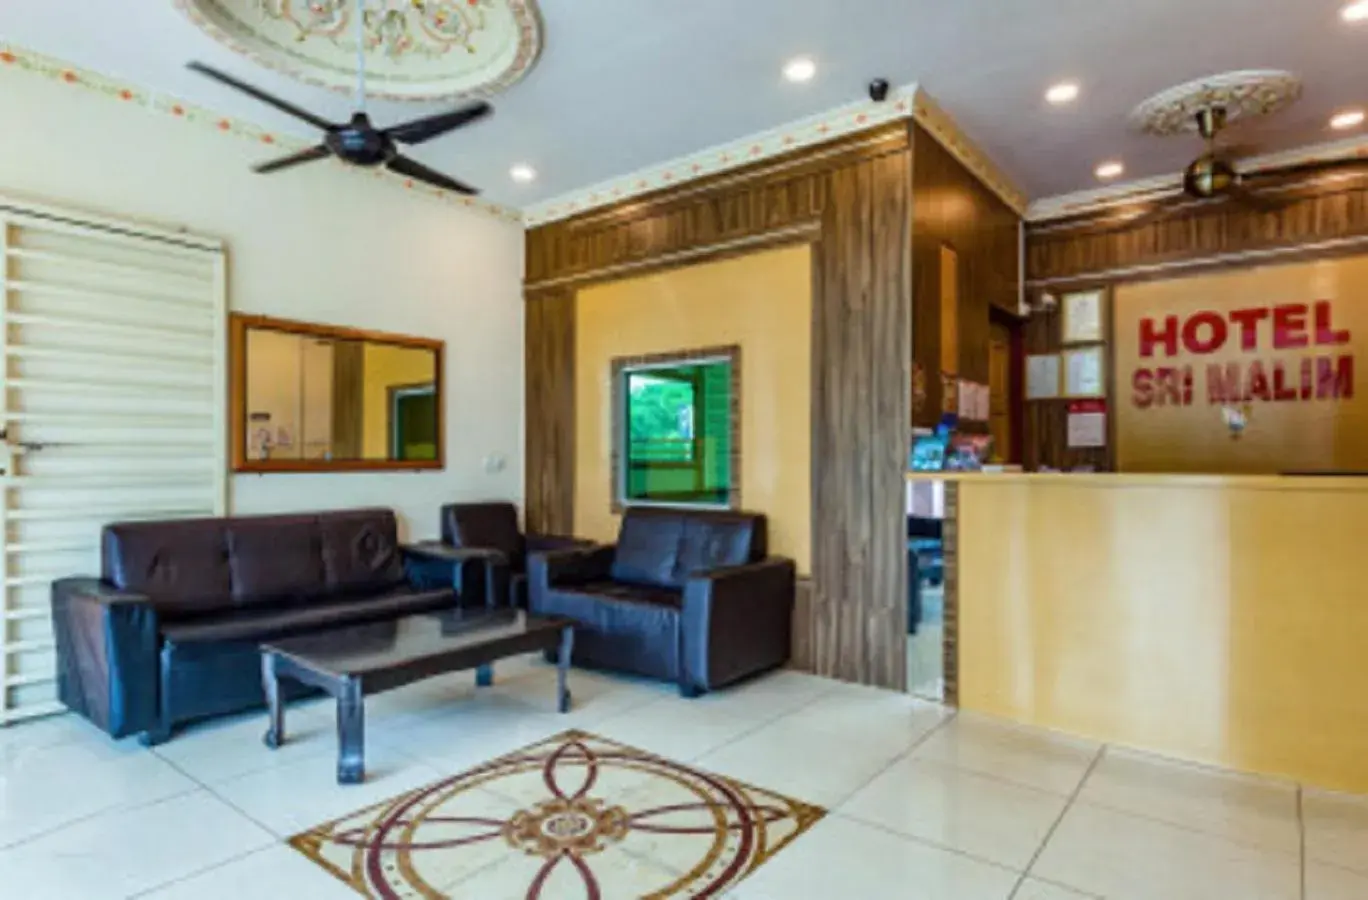 Lobby/Reception in Hotel Sri Malim